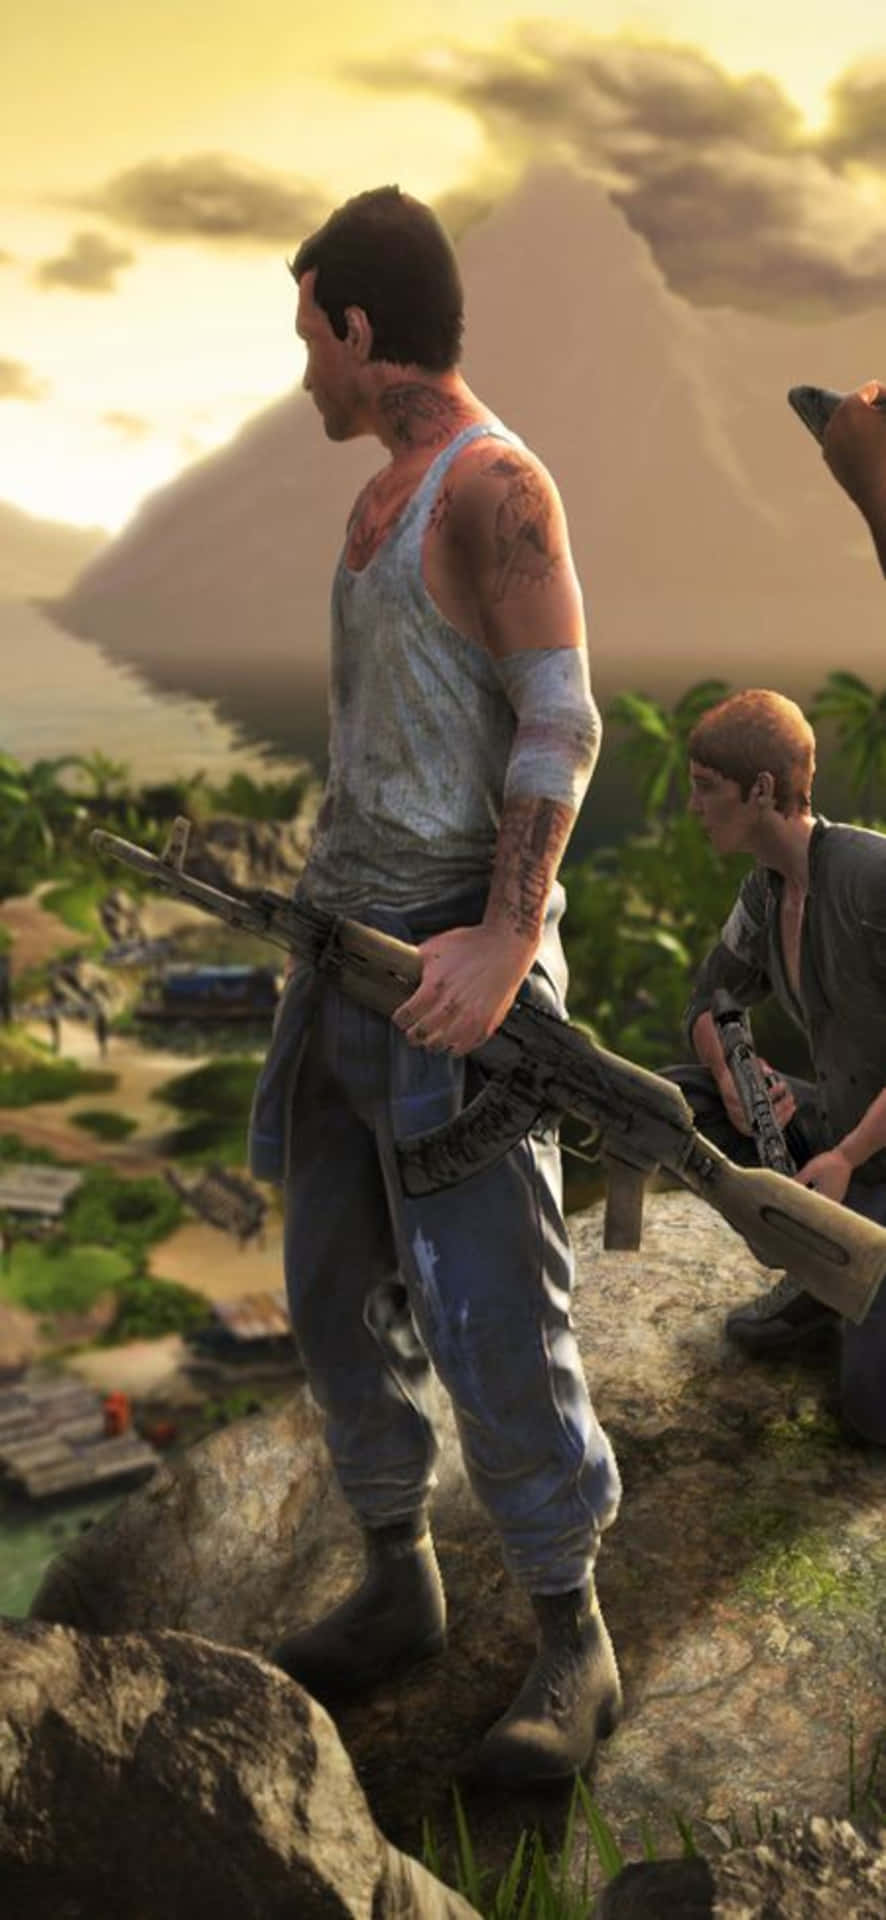 Sfondodisordinato Del Personaggio Di Far Cry 3 Per Iphone X.